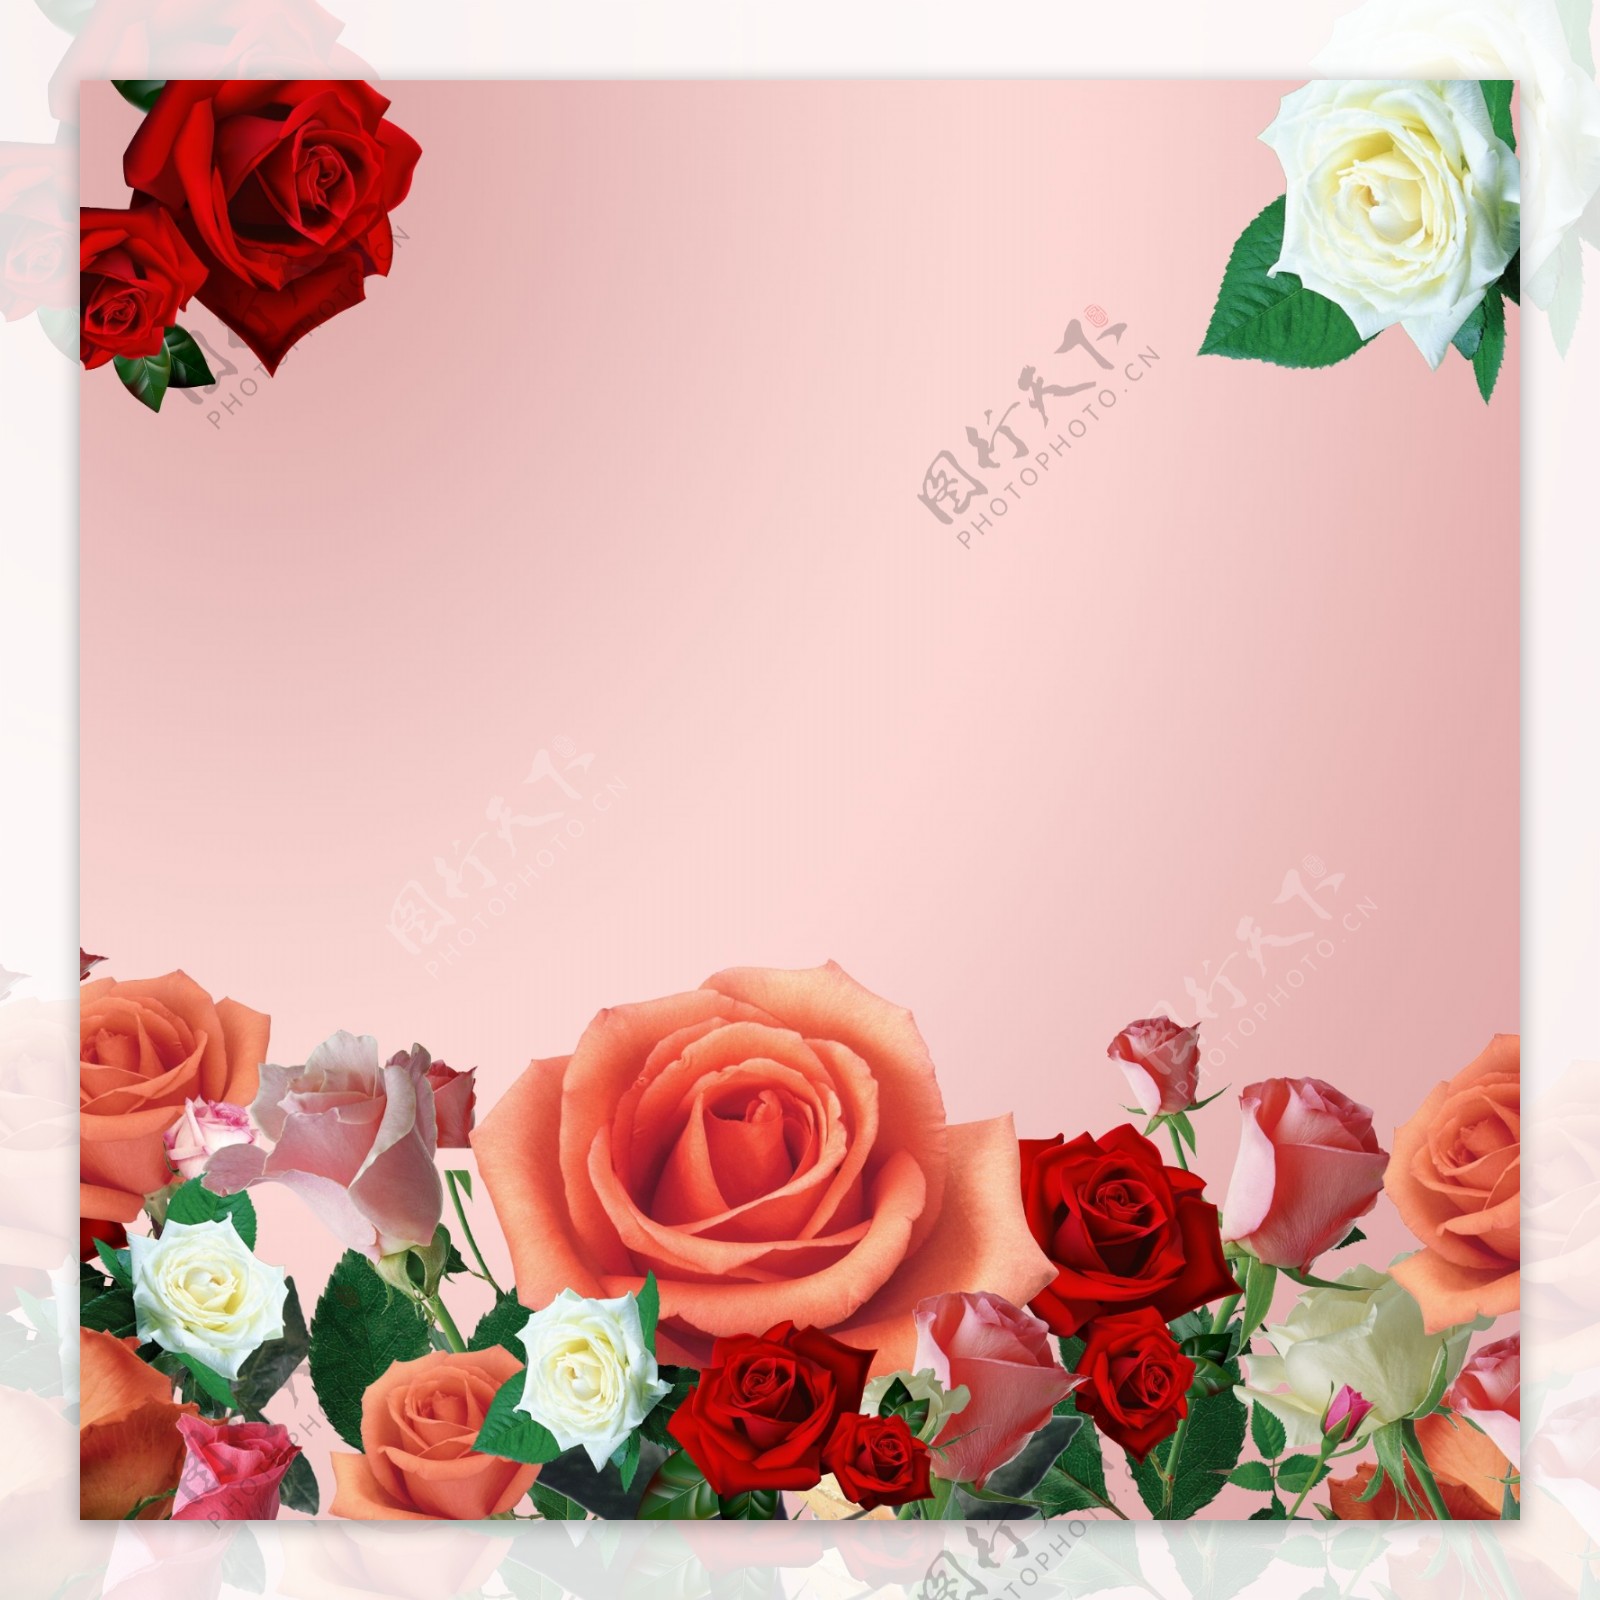 花朵玫瑰花花苞树叶广告粉色背景素材